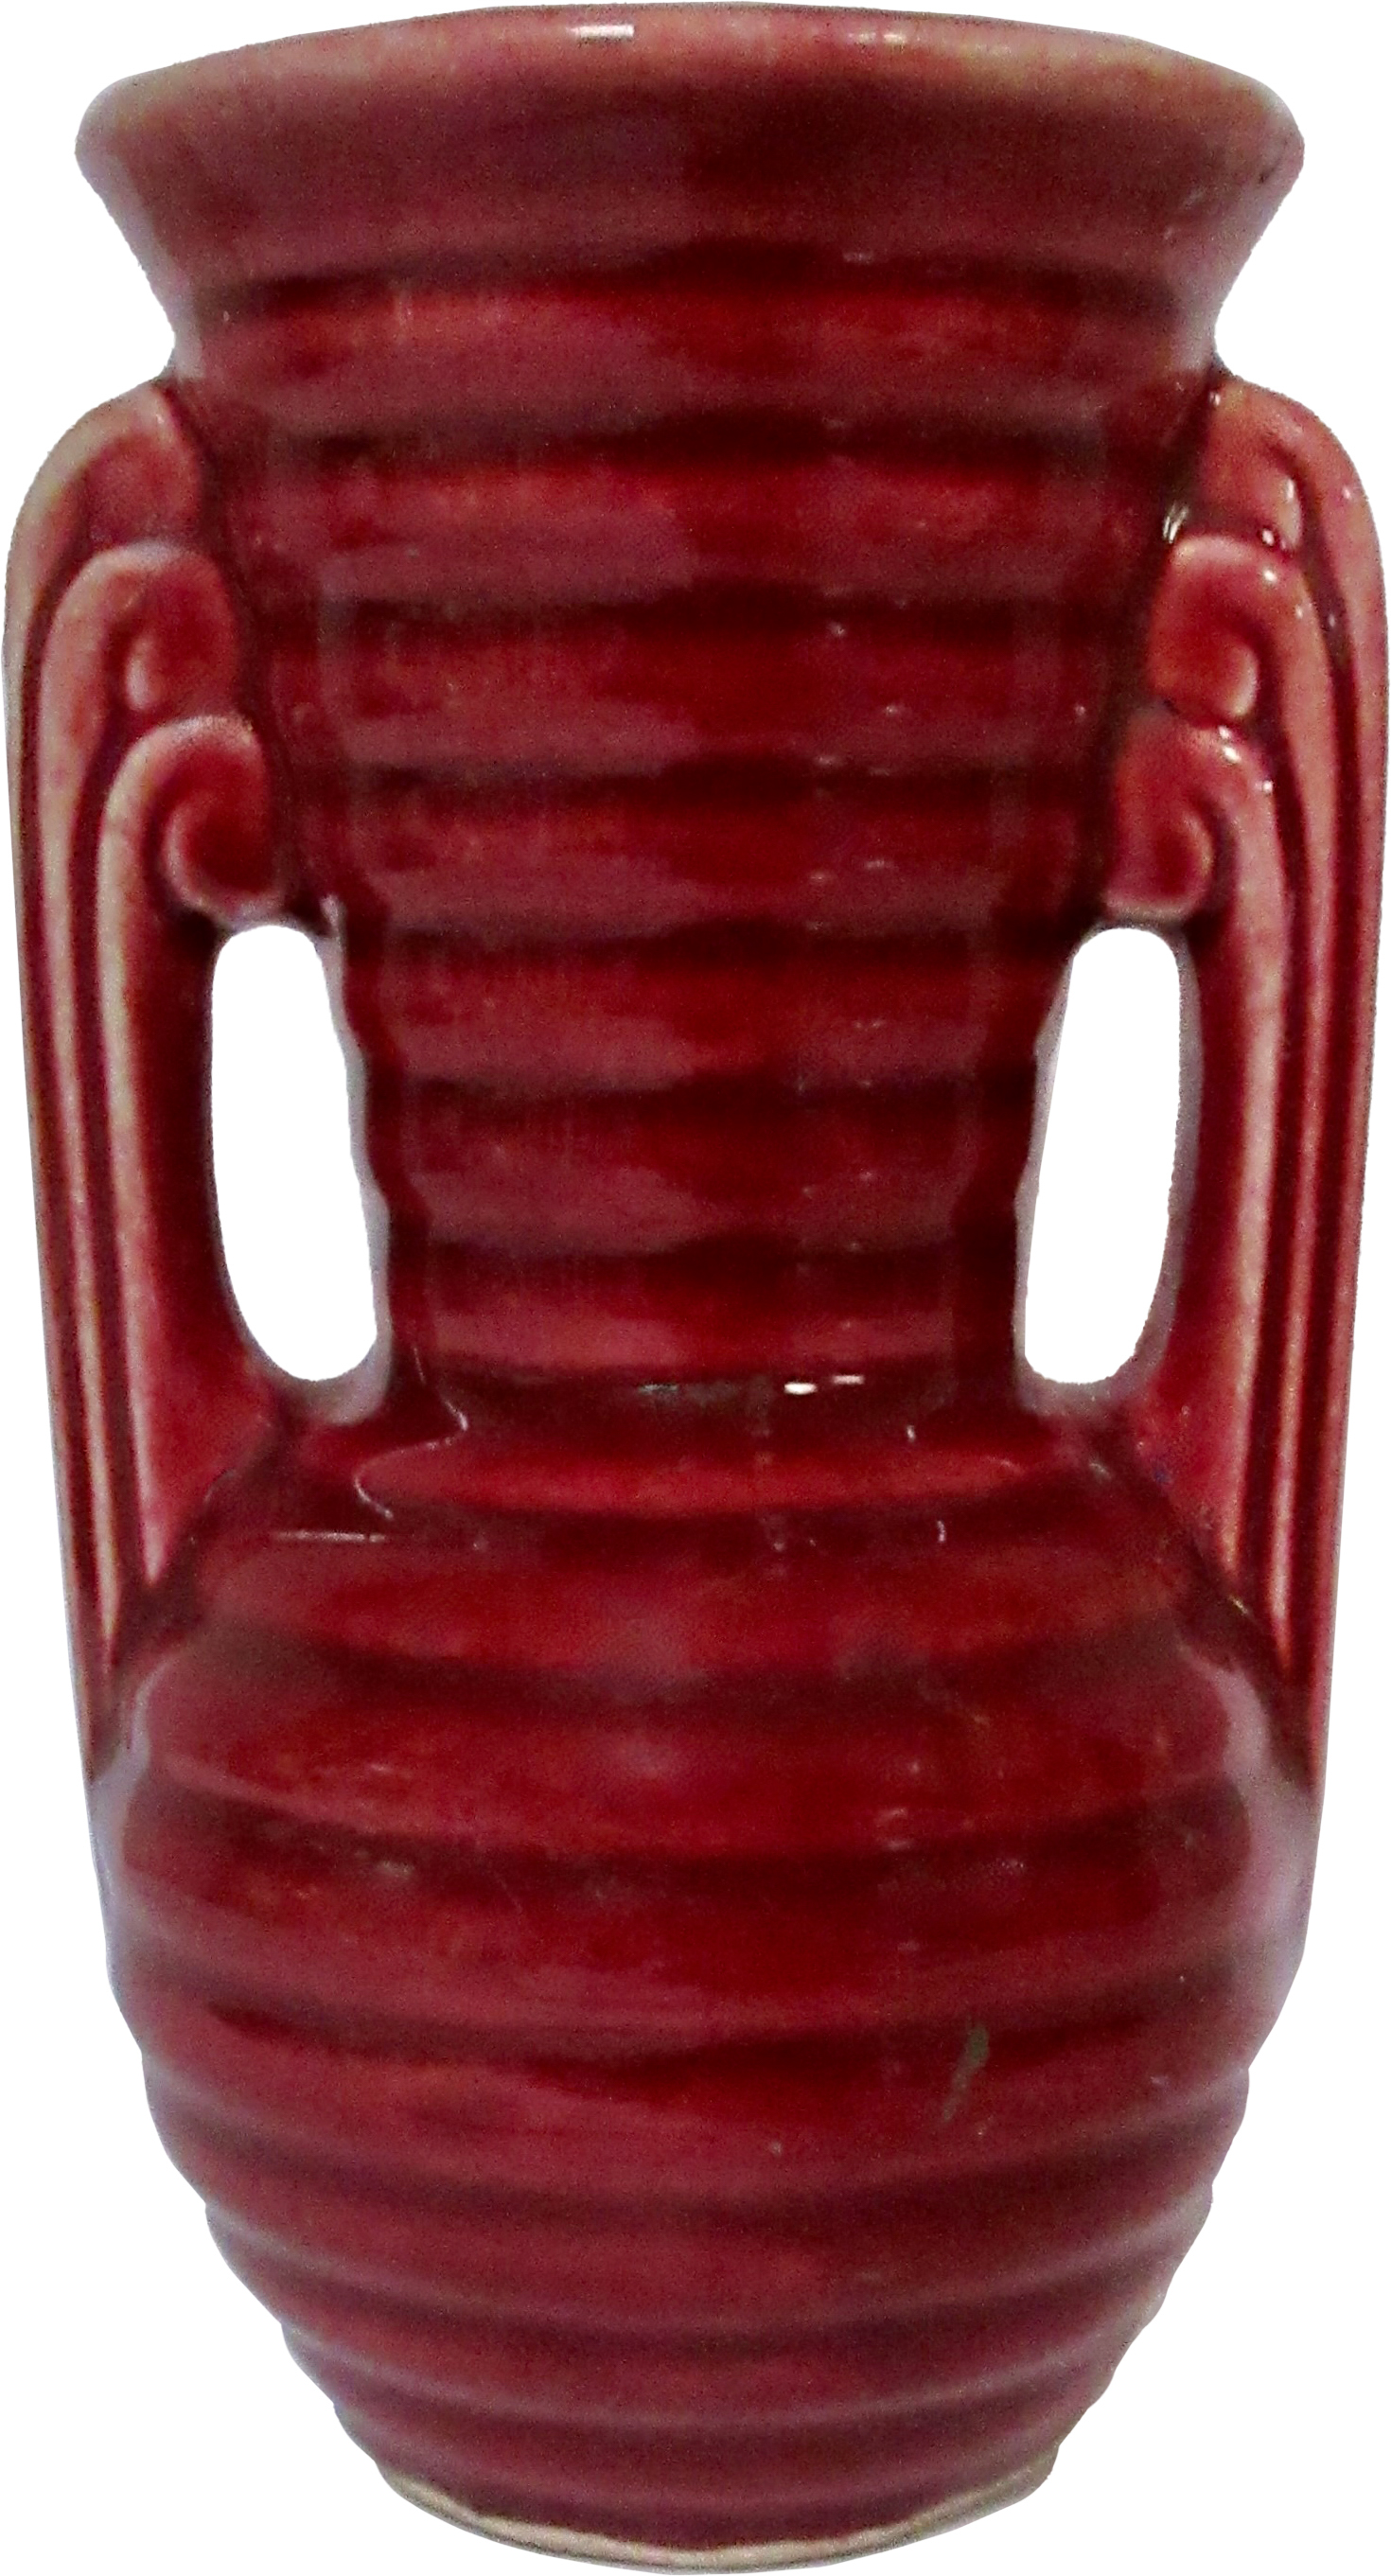 1940s American Pottery Beehive Vase~P77593693